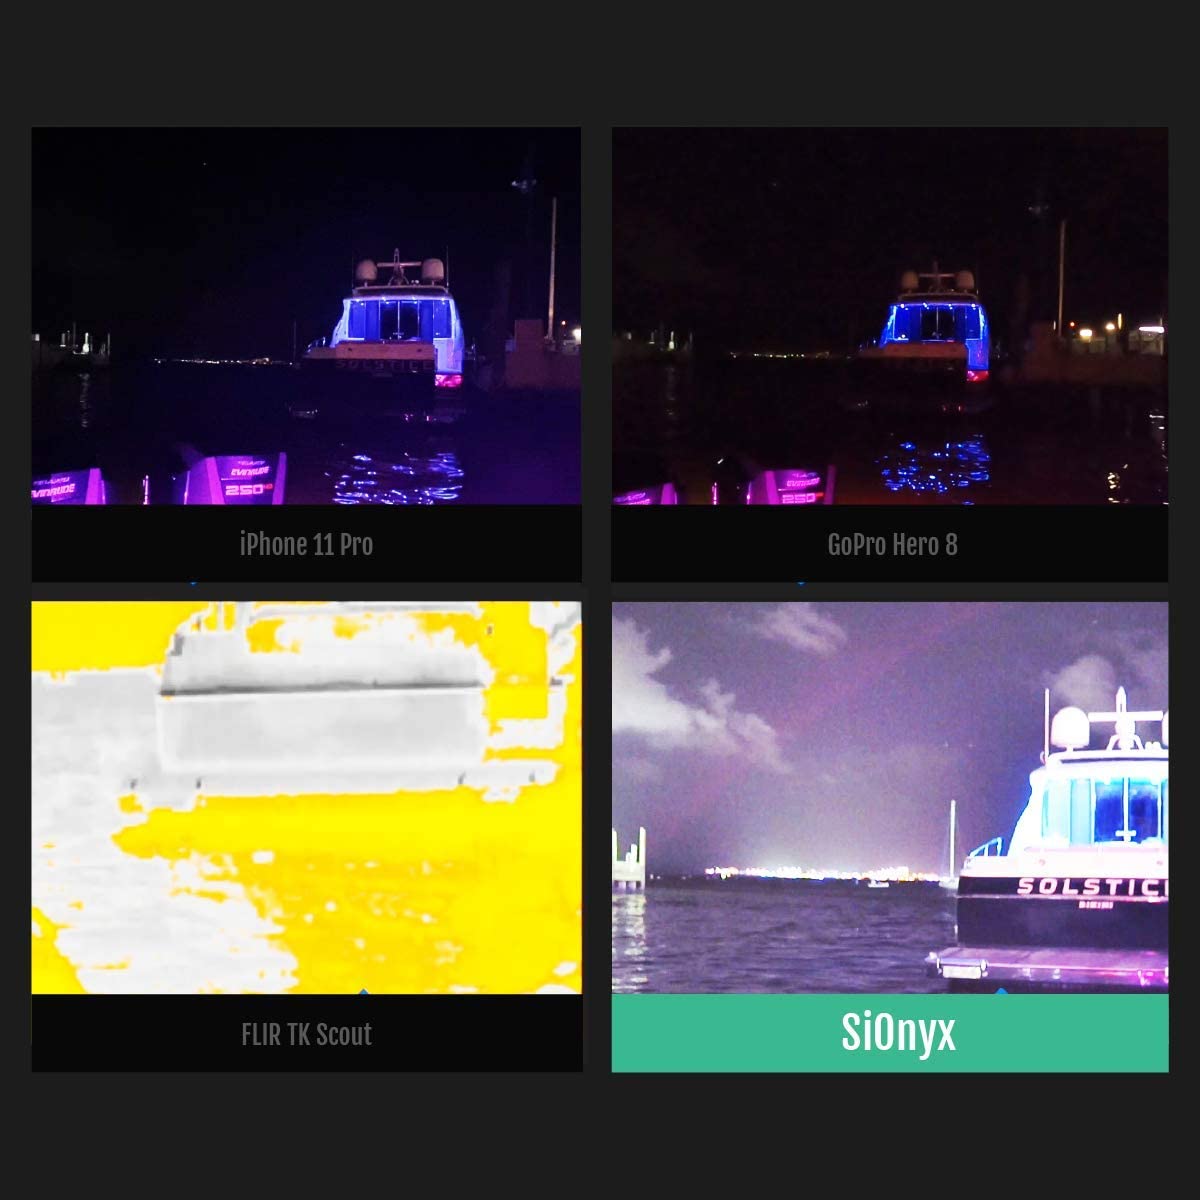 SiOnyx Aurora I Cámara de visión nocturna digital a todo color I Ultra baja luz con sensor IR tecnología I arma clasificada, resistente al agua, WiFi, brújula y GPS capaz de visión nocturna infrarroja monocular.